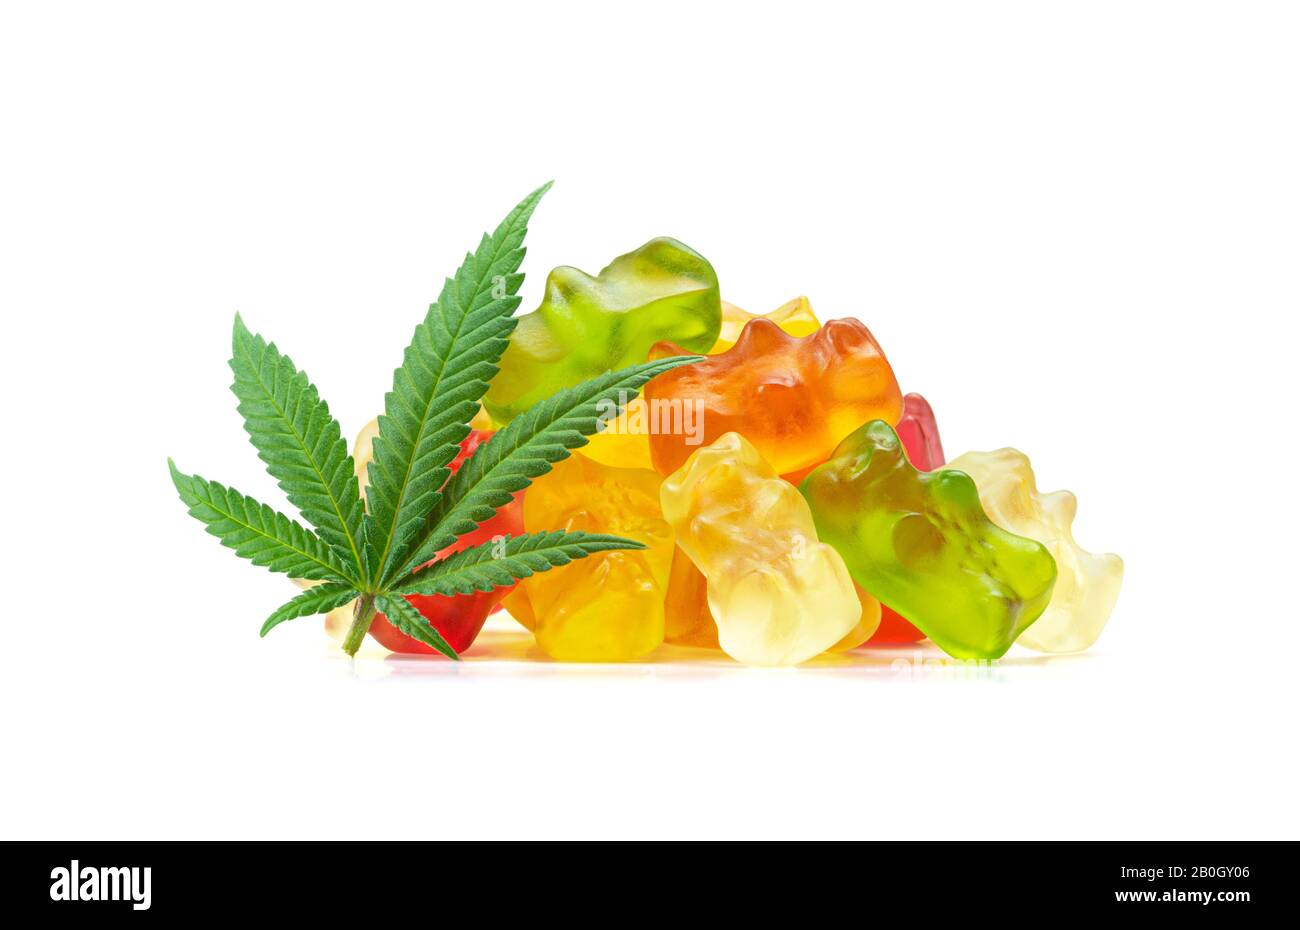 Ours gommanique marijuana médicale Edibles, Bonbons Perfusés avec CBD ou THC, avec feuilles de cannabis isolées sur fond blanc Banque D'Images